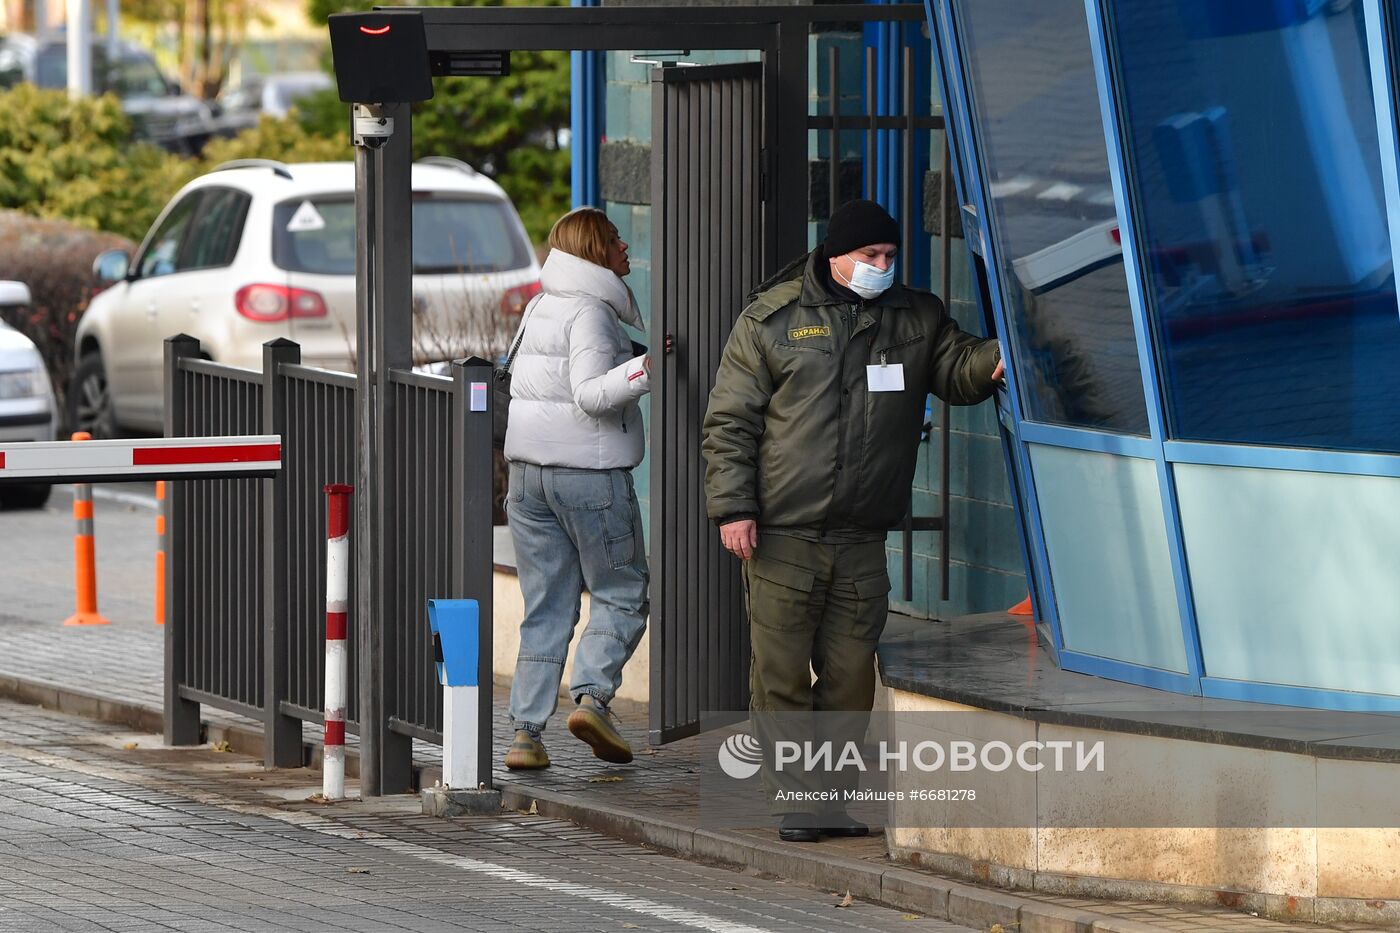 В Москве убили бывшего топ-менеджера "Смоленского банка" и членов его семьи